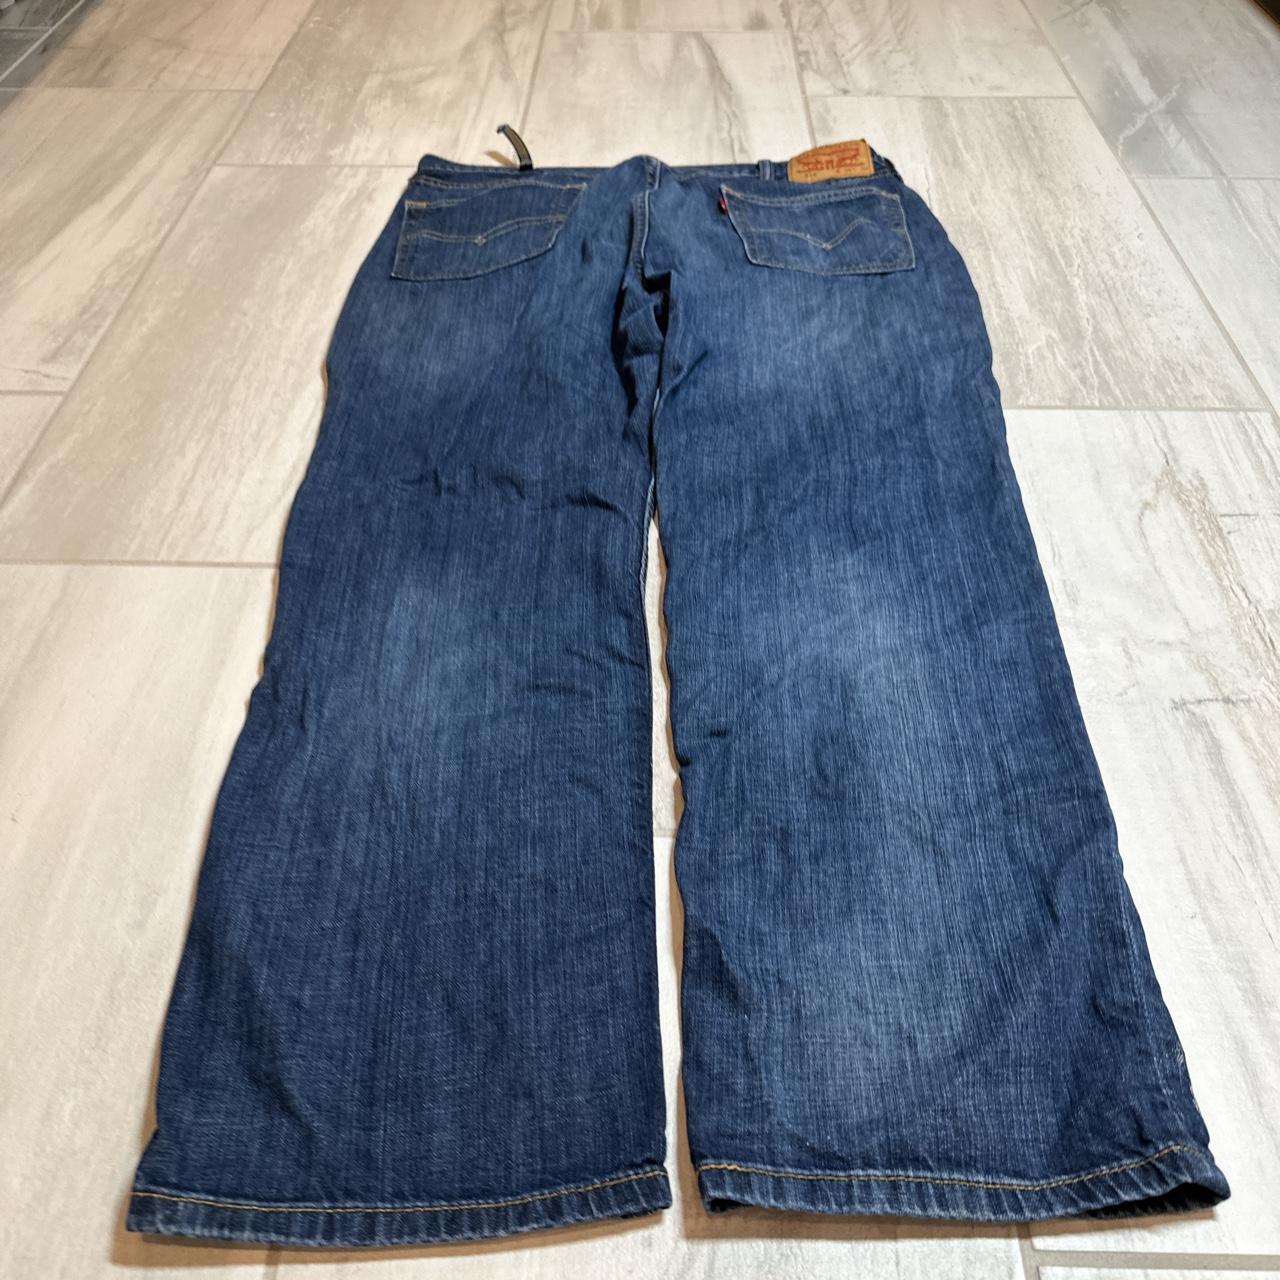 Vintage baggy Levi’s skater jeans Size 38/30... - Depop